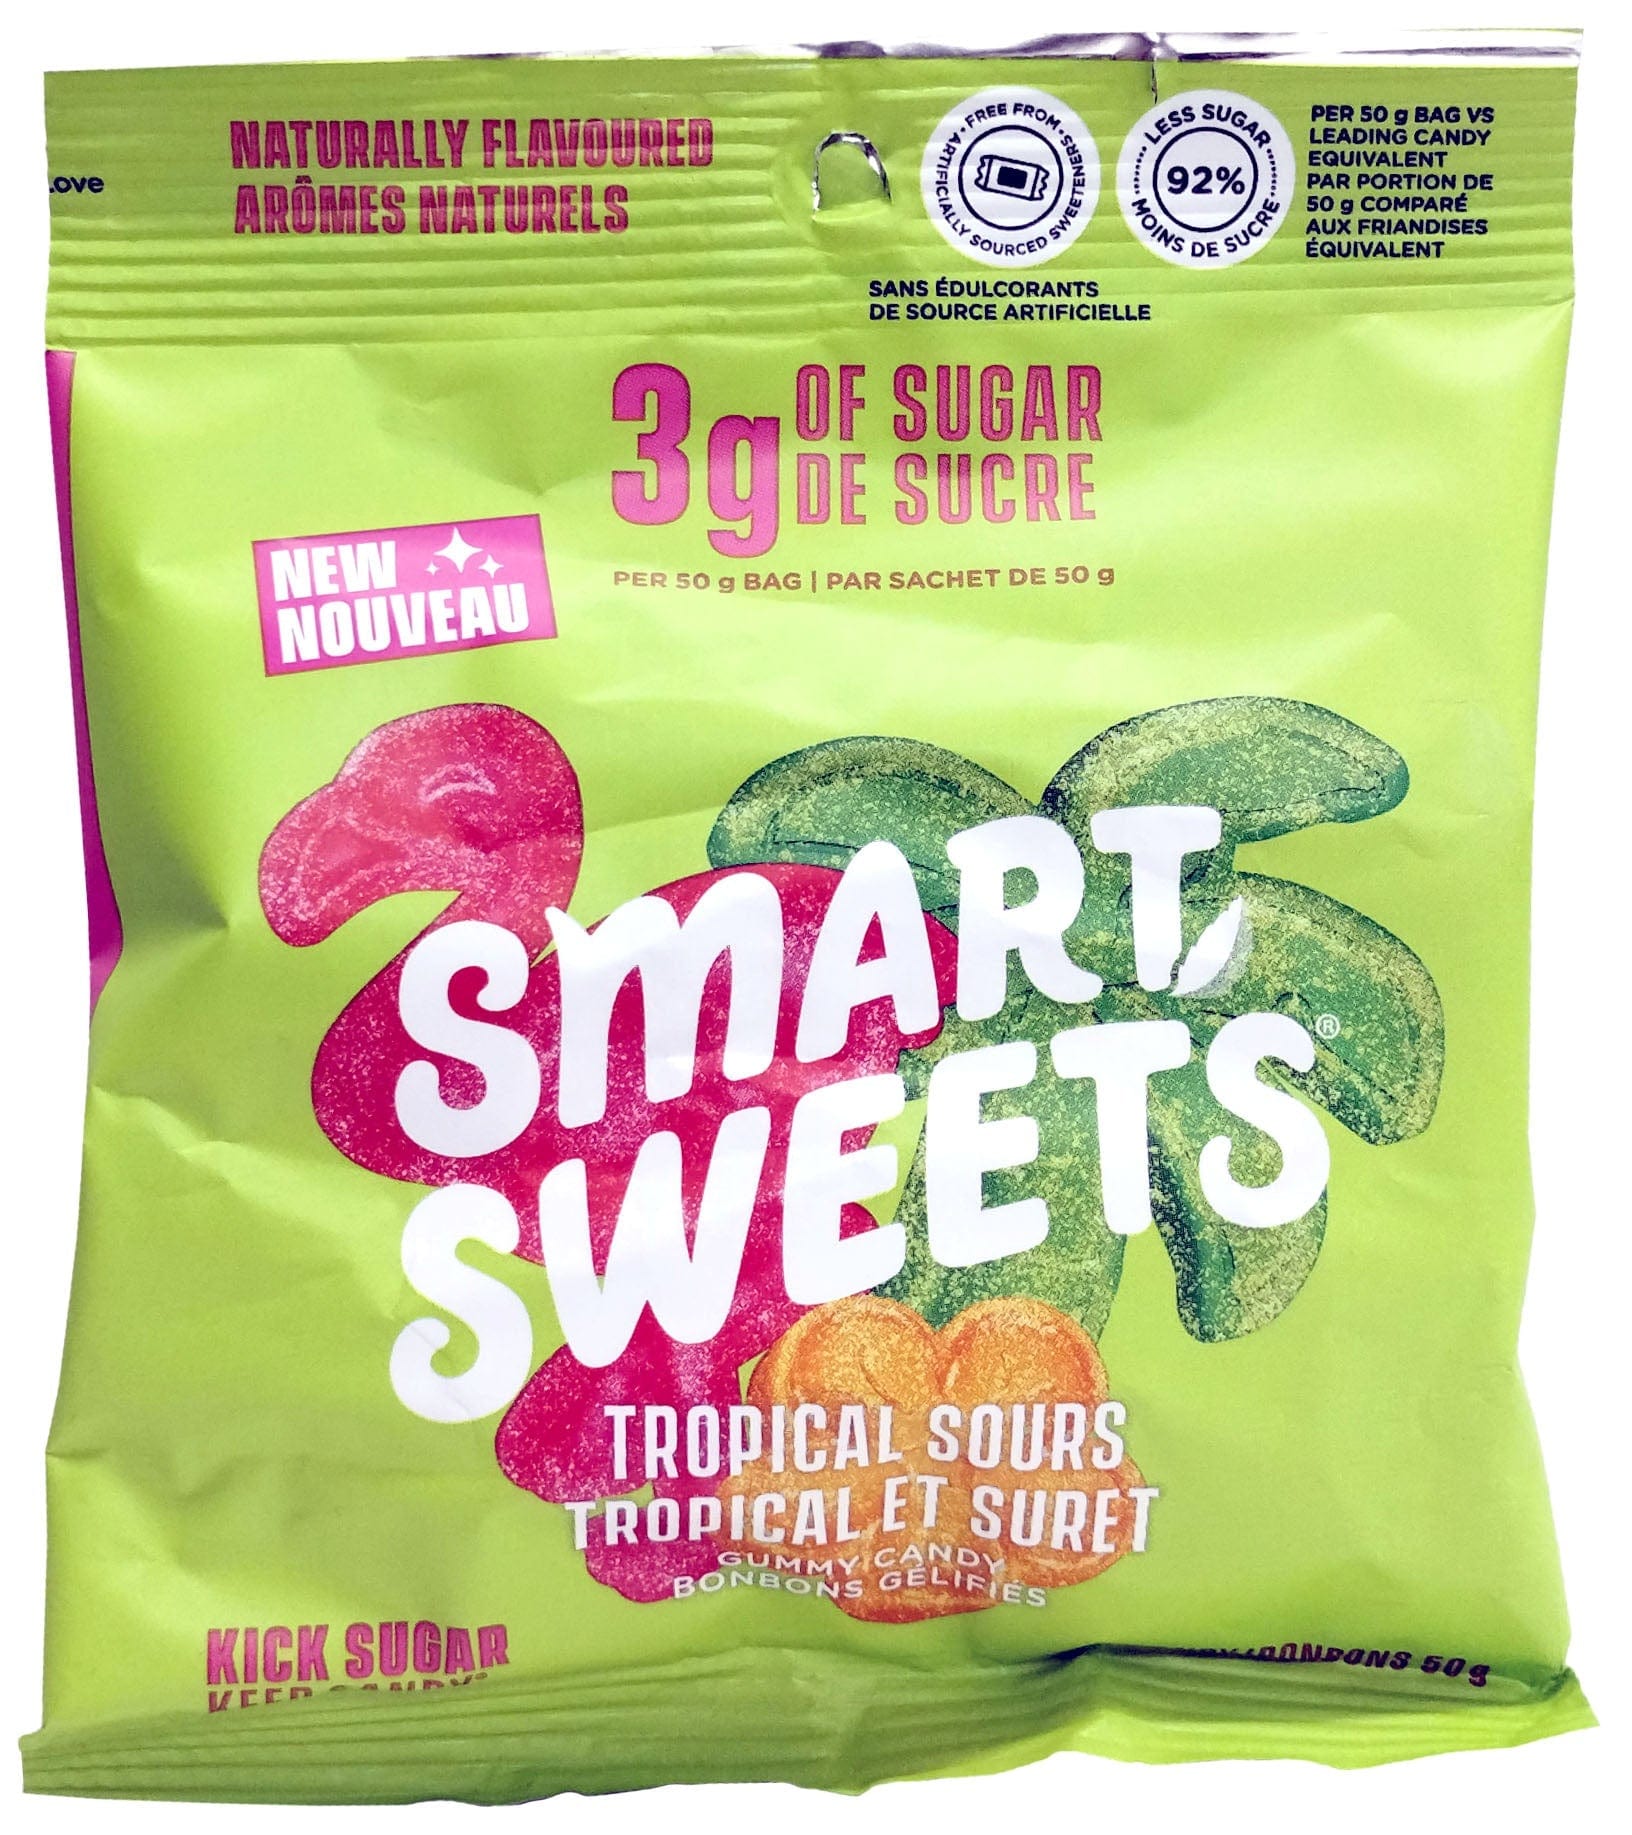 SMART SWEETS Épicerie Bonbons tropicaux et surets 50g